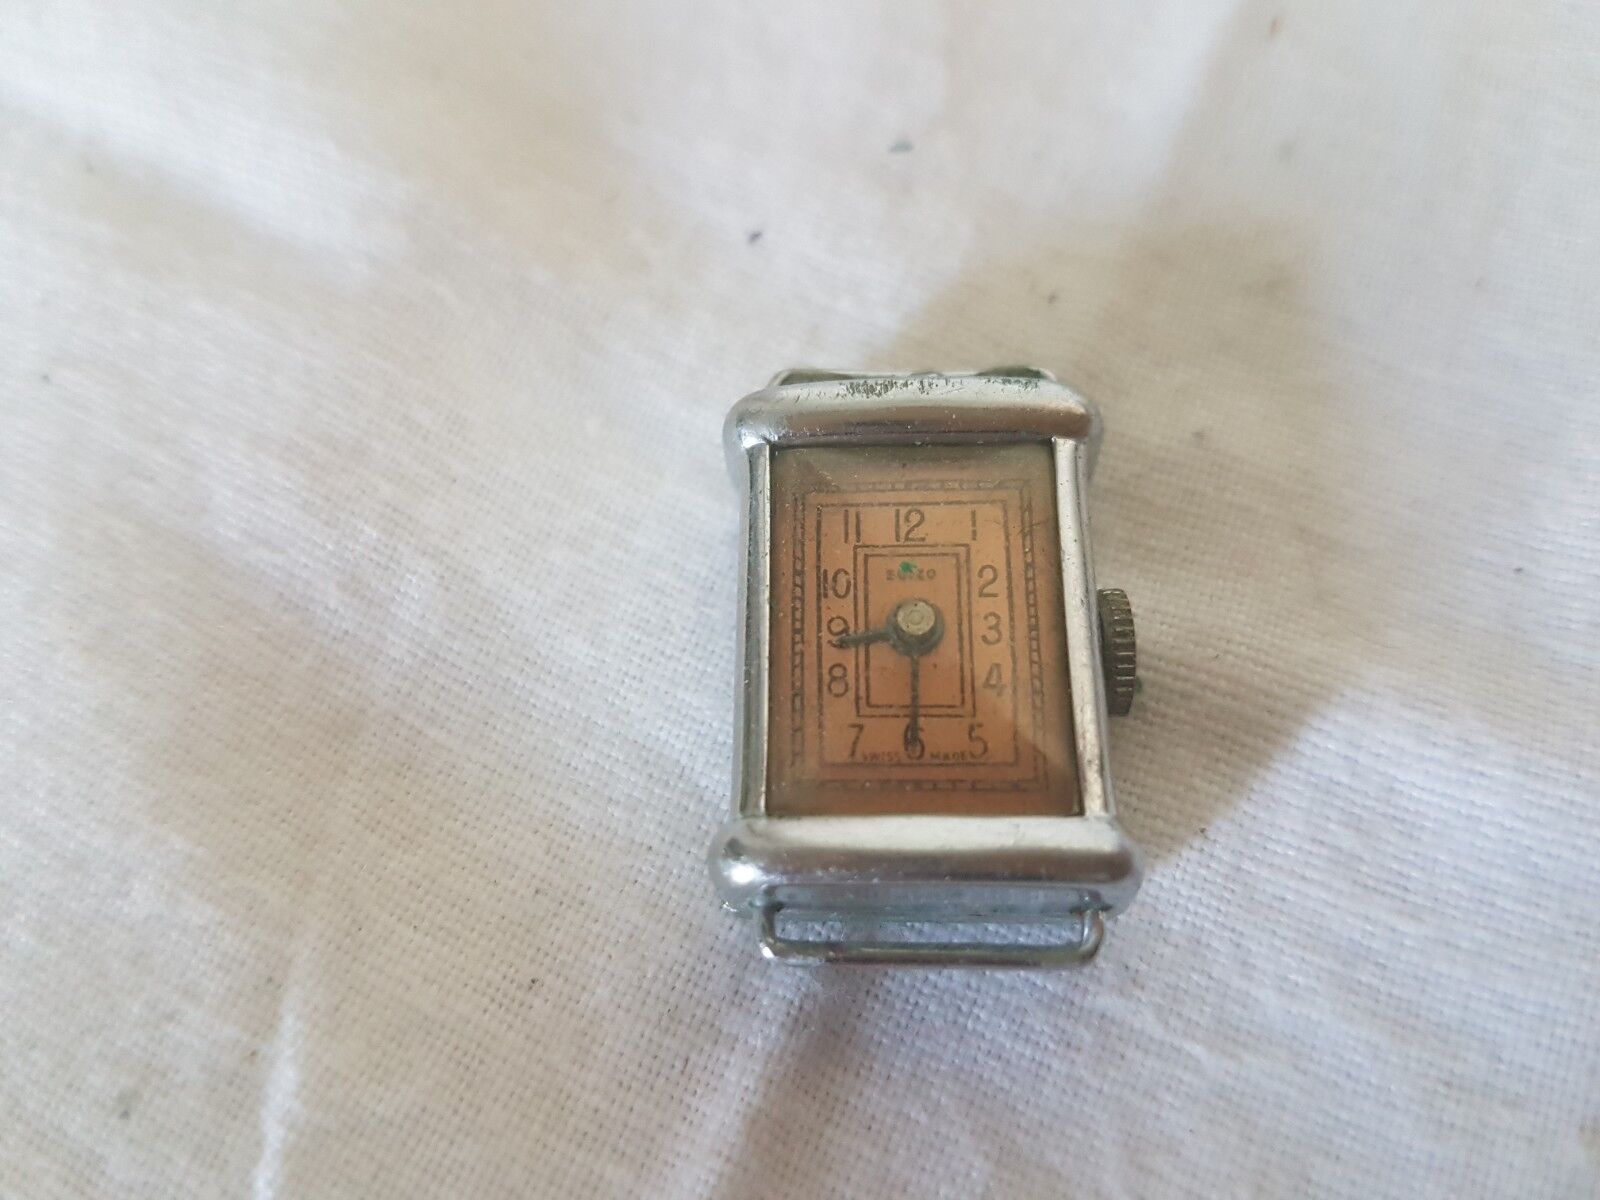 Aus einer Auflösung: schöne Suizo Swiss Made Armbanduhr